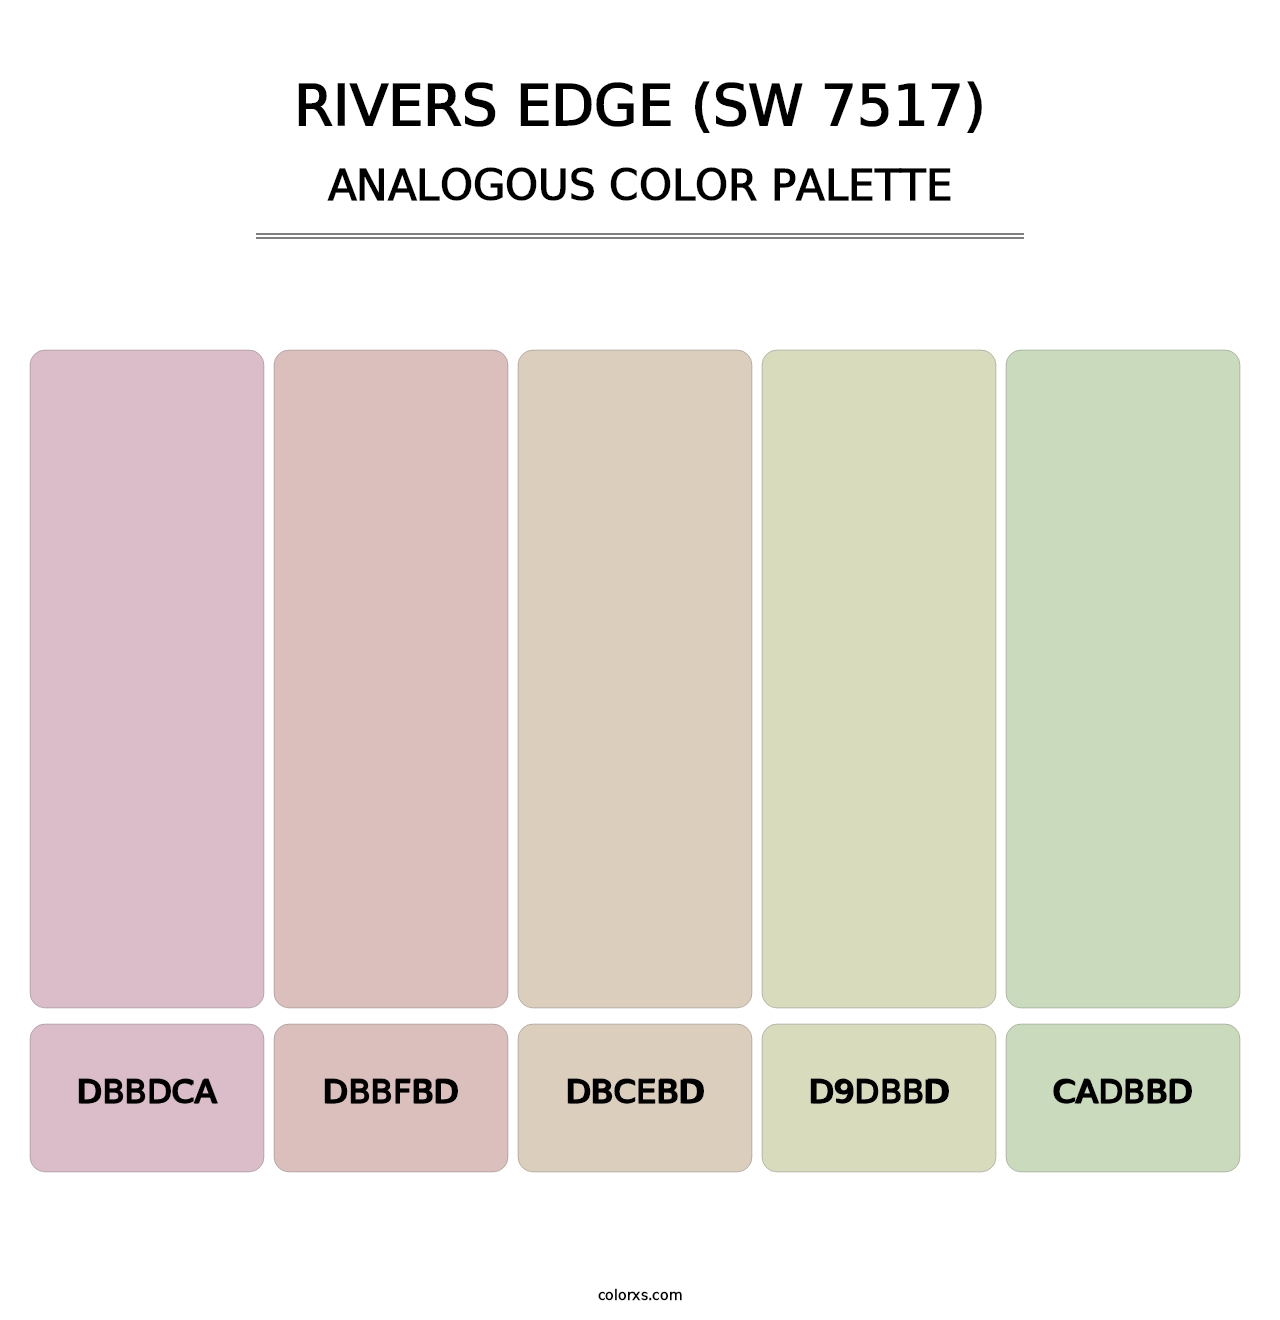 Rivers Edge (SW 7517) - Analogous Color Palette